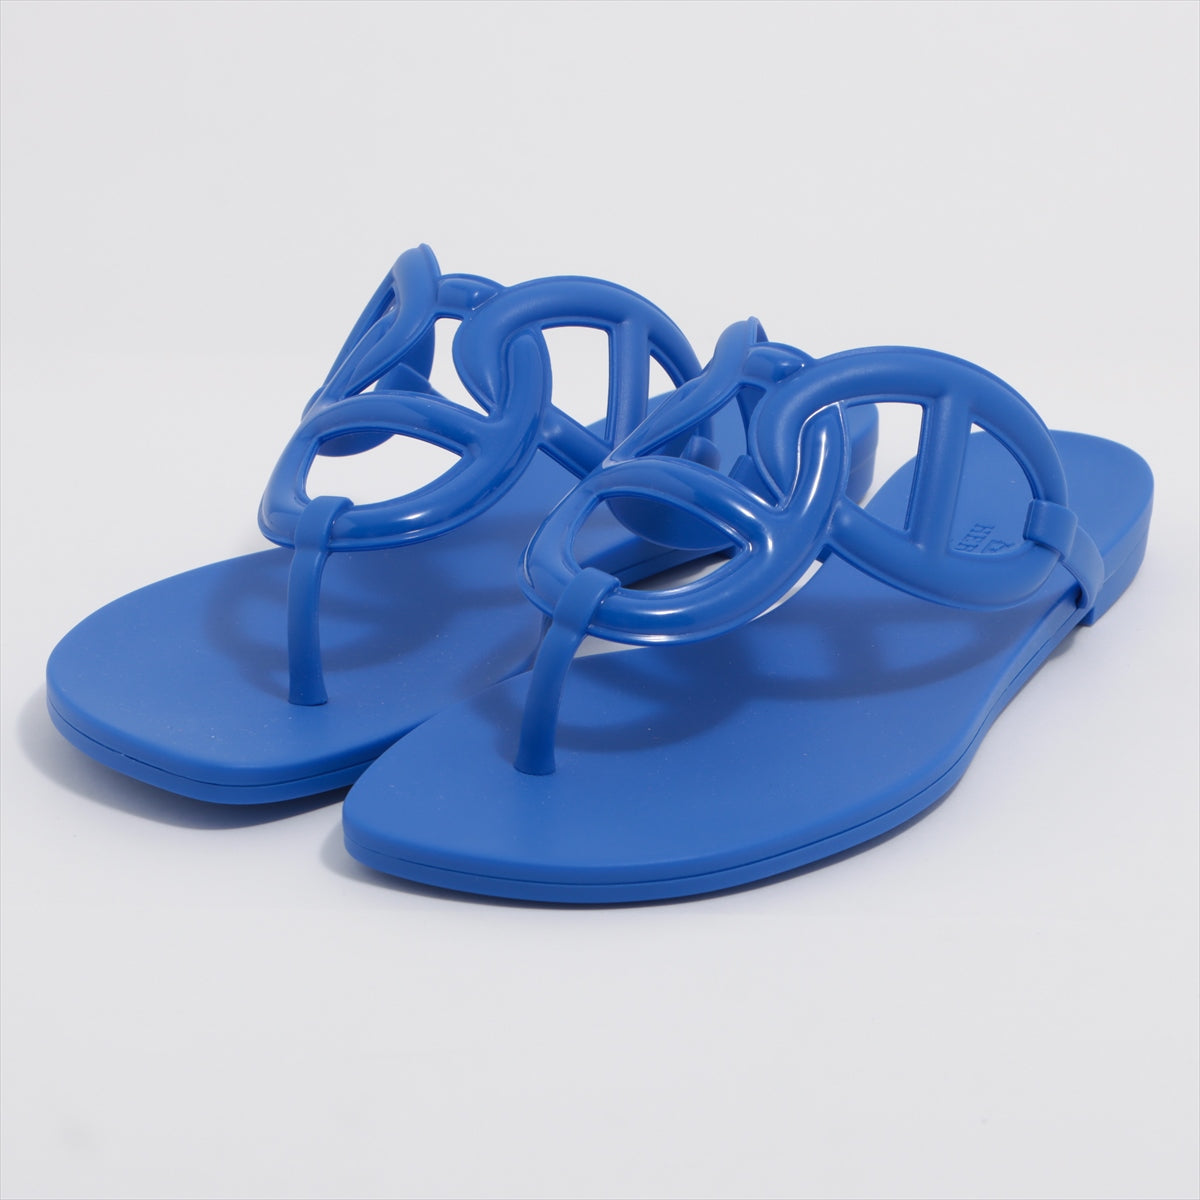 Hermès Egery Rubber Sandals 38 Ladies' Blue Chaîne d'Ancre Box Bag Included